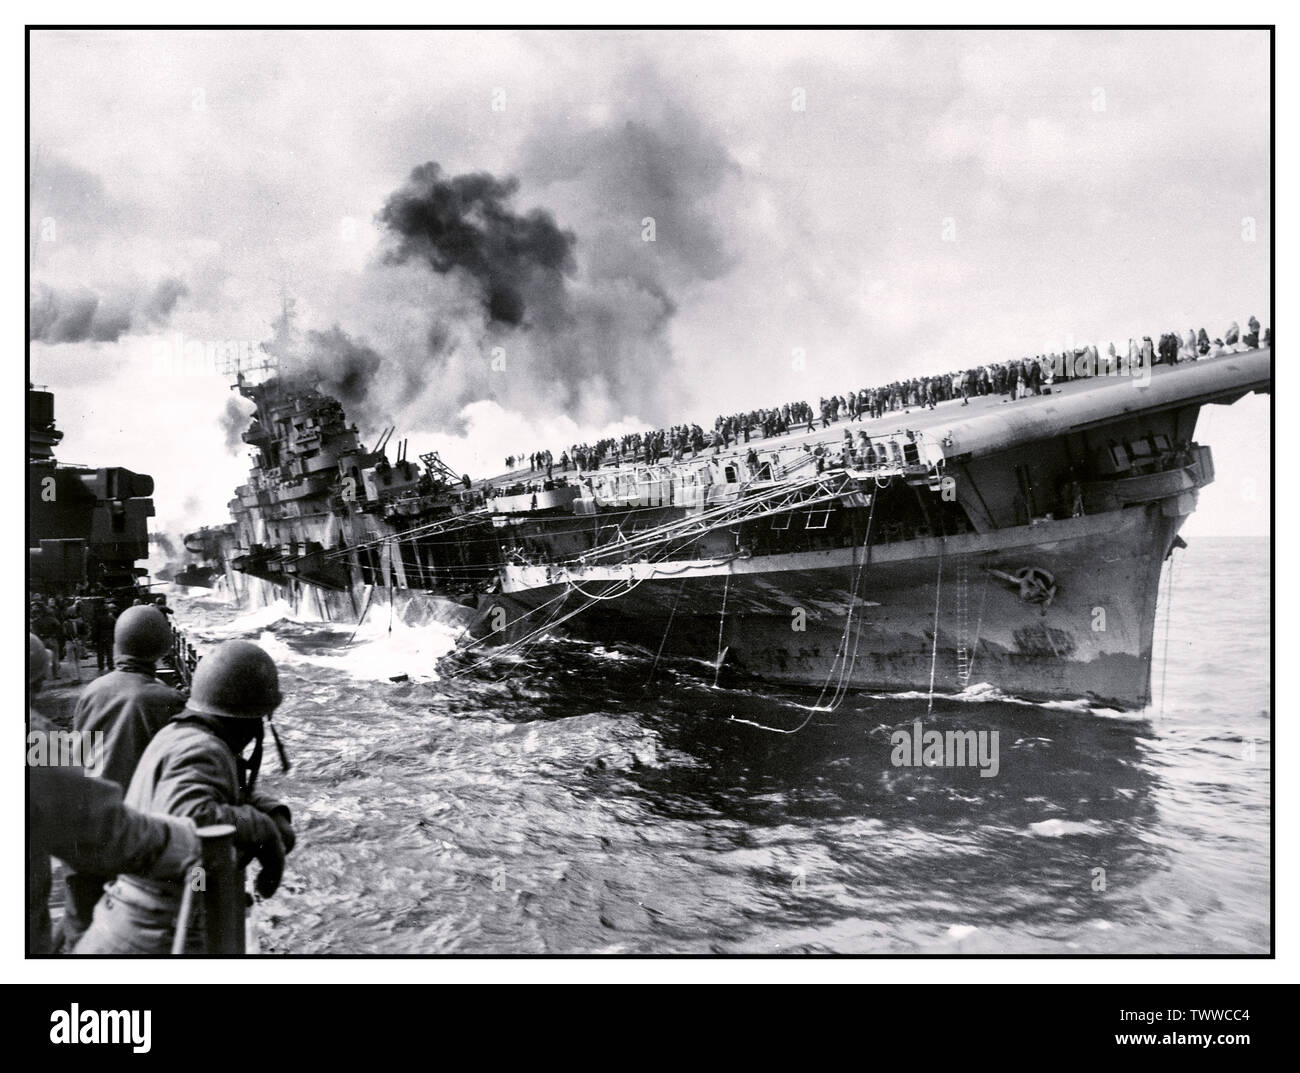 WW2 immagine della portaerei USS Franklin (CV-13) attaccato nel Pacifico durante la II Guerra Mondiale, Marzo 19, 1945. Fotografata da PHC Albert giovenco dall'incrociatore USS Santa Fe (CL-60), che è stata a fianco di assistere con mezzi antincendio e di soccorso. Il supporto è sul fuoco e la quotazione dopo che essa è stata colpita da un giapponese di attacco aereo durante il funzionamento al largo delle coste del Giappone - l'equipaggio è chiaramente visibile sul ponte di volo. Dopo l'attacco la nave giacevano morti nell'acqua, ha preso un 13° elenco di dritta, perso tutte le comunicazioni radio e arrostito sotto il calore da incendi avvolgente. Foto Stock